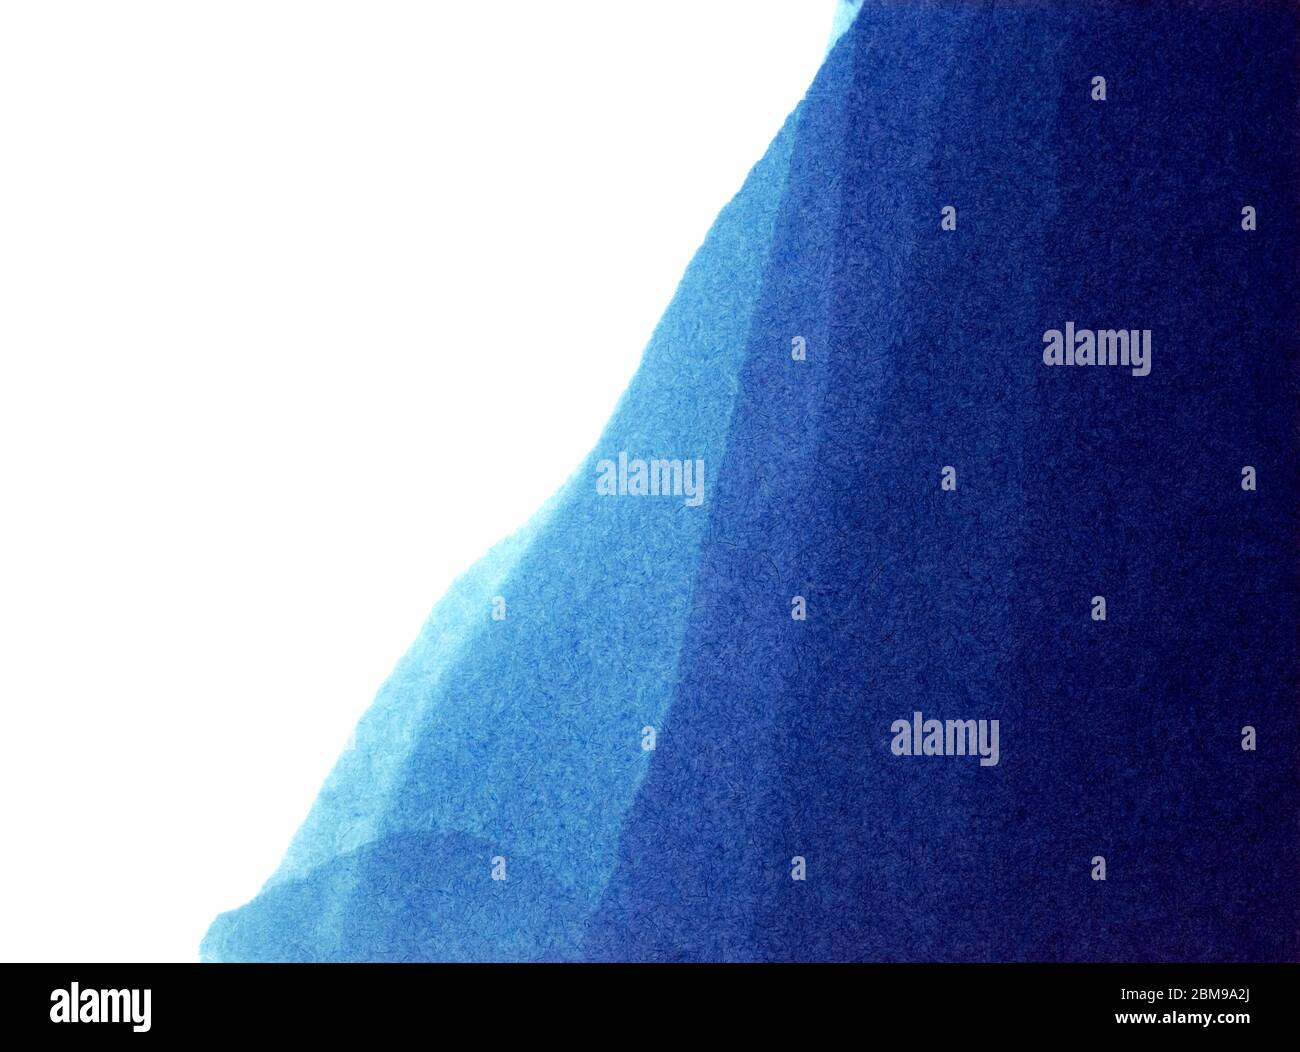 Bleu persan à la main encre colorée aquarelle abstraite papier peint toile de fond des vagues fraîches de l'océan isolé sur la texture de papier vintage Banque D'Images